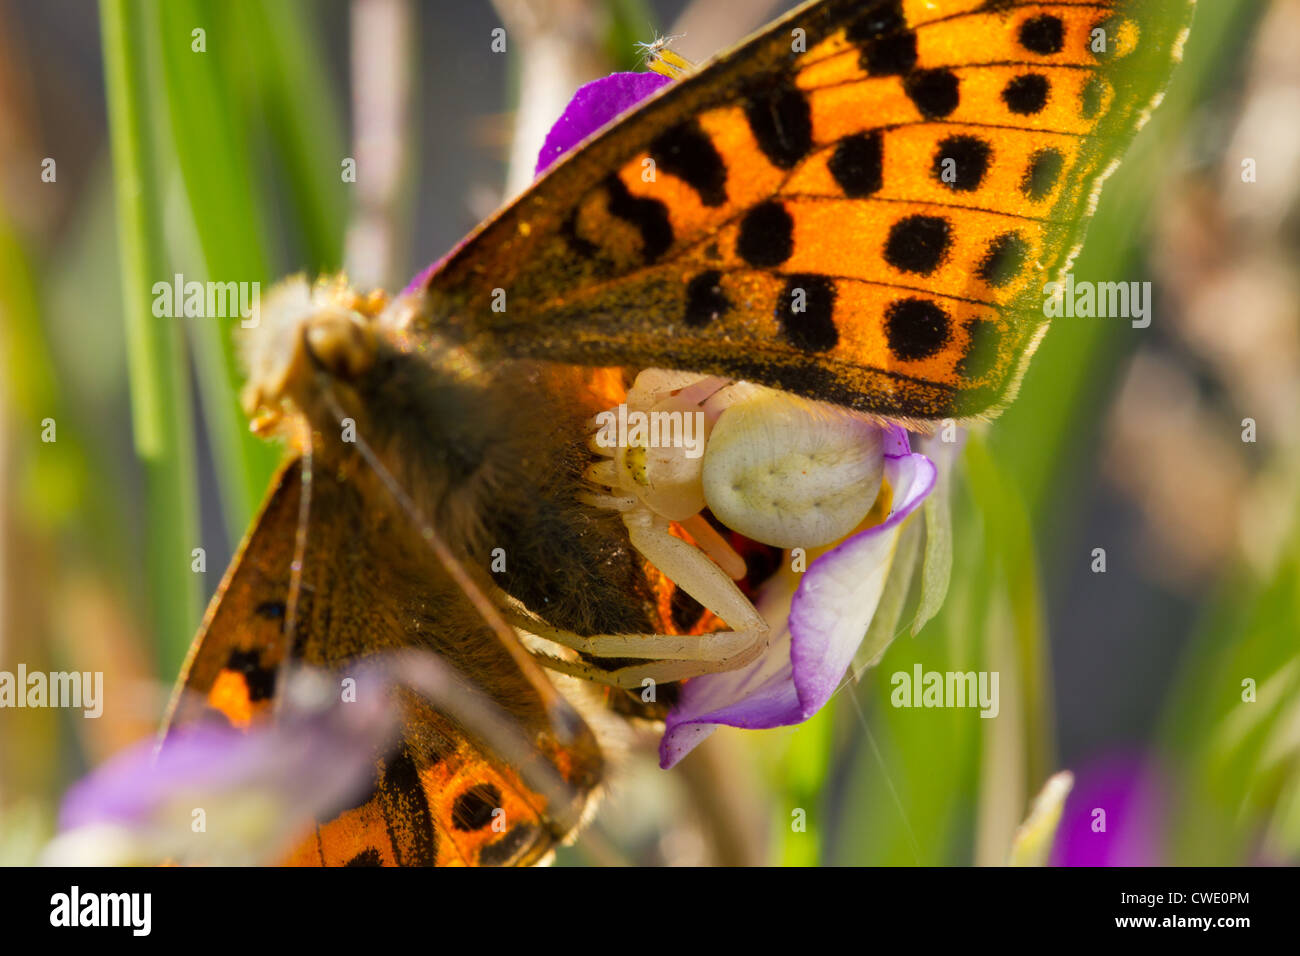 Oro ragno granchio - Misumena vatia, tenendo la sua preda, un Fritillary butterfly - Argynnis sp. Foto Stock